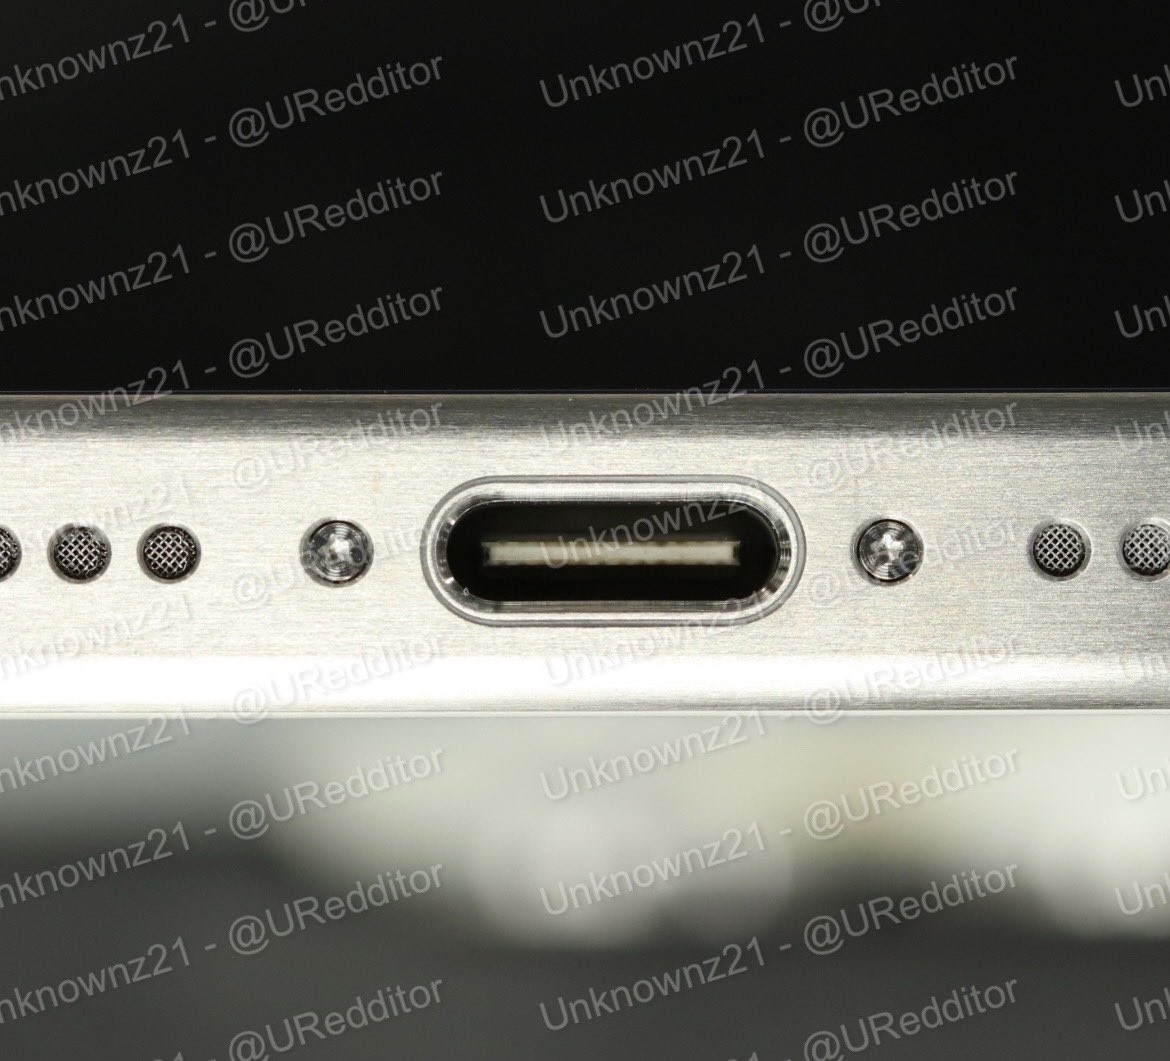 推特知名爆料賬號Unknownz21發佈的iPhone 15 USB-C端口照片。